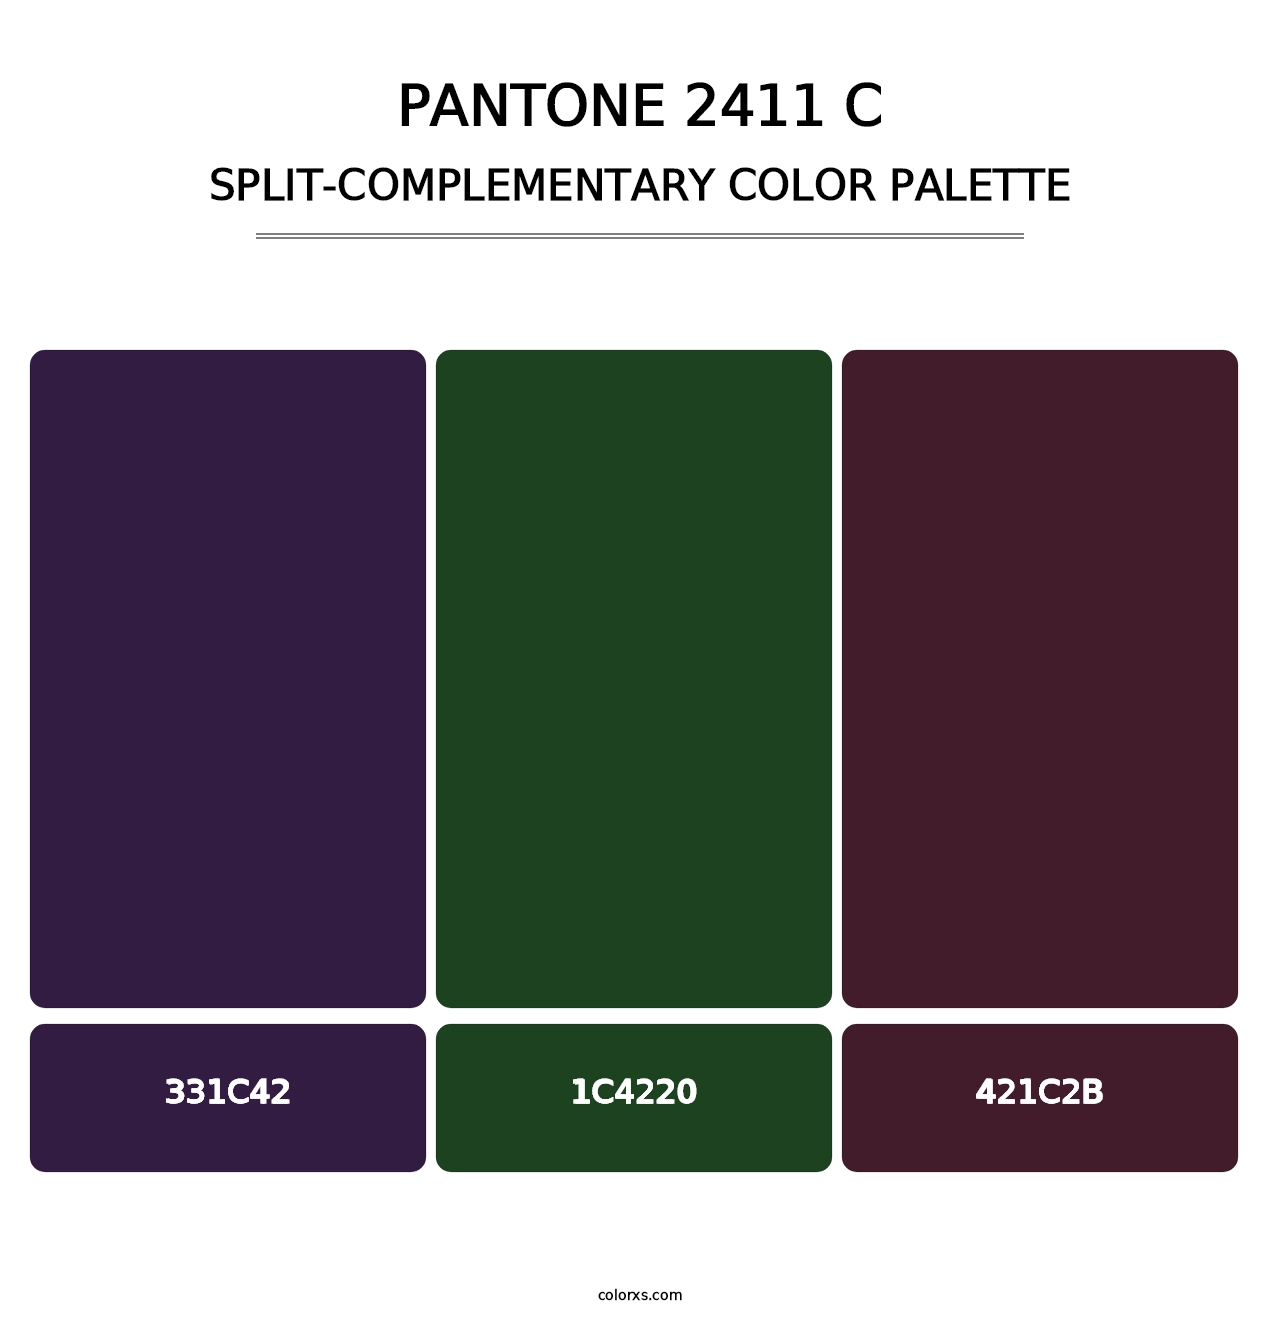 PANTONE 2411 C - Split-Complementary Color Palette